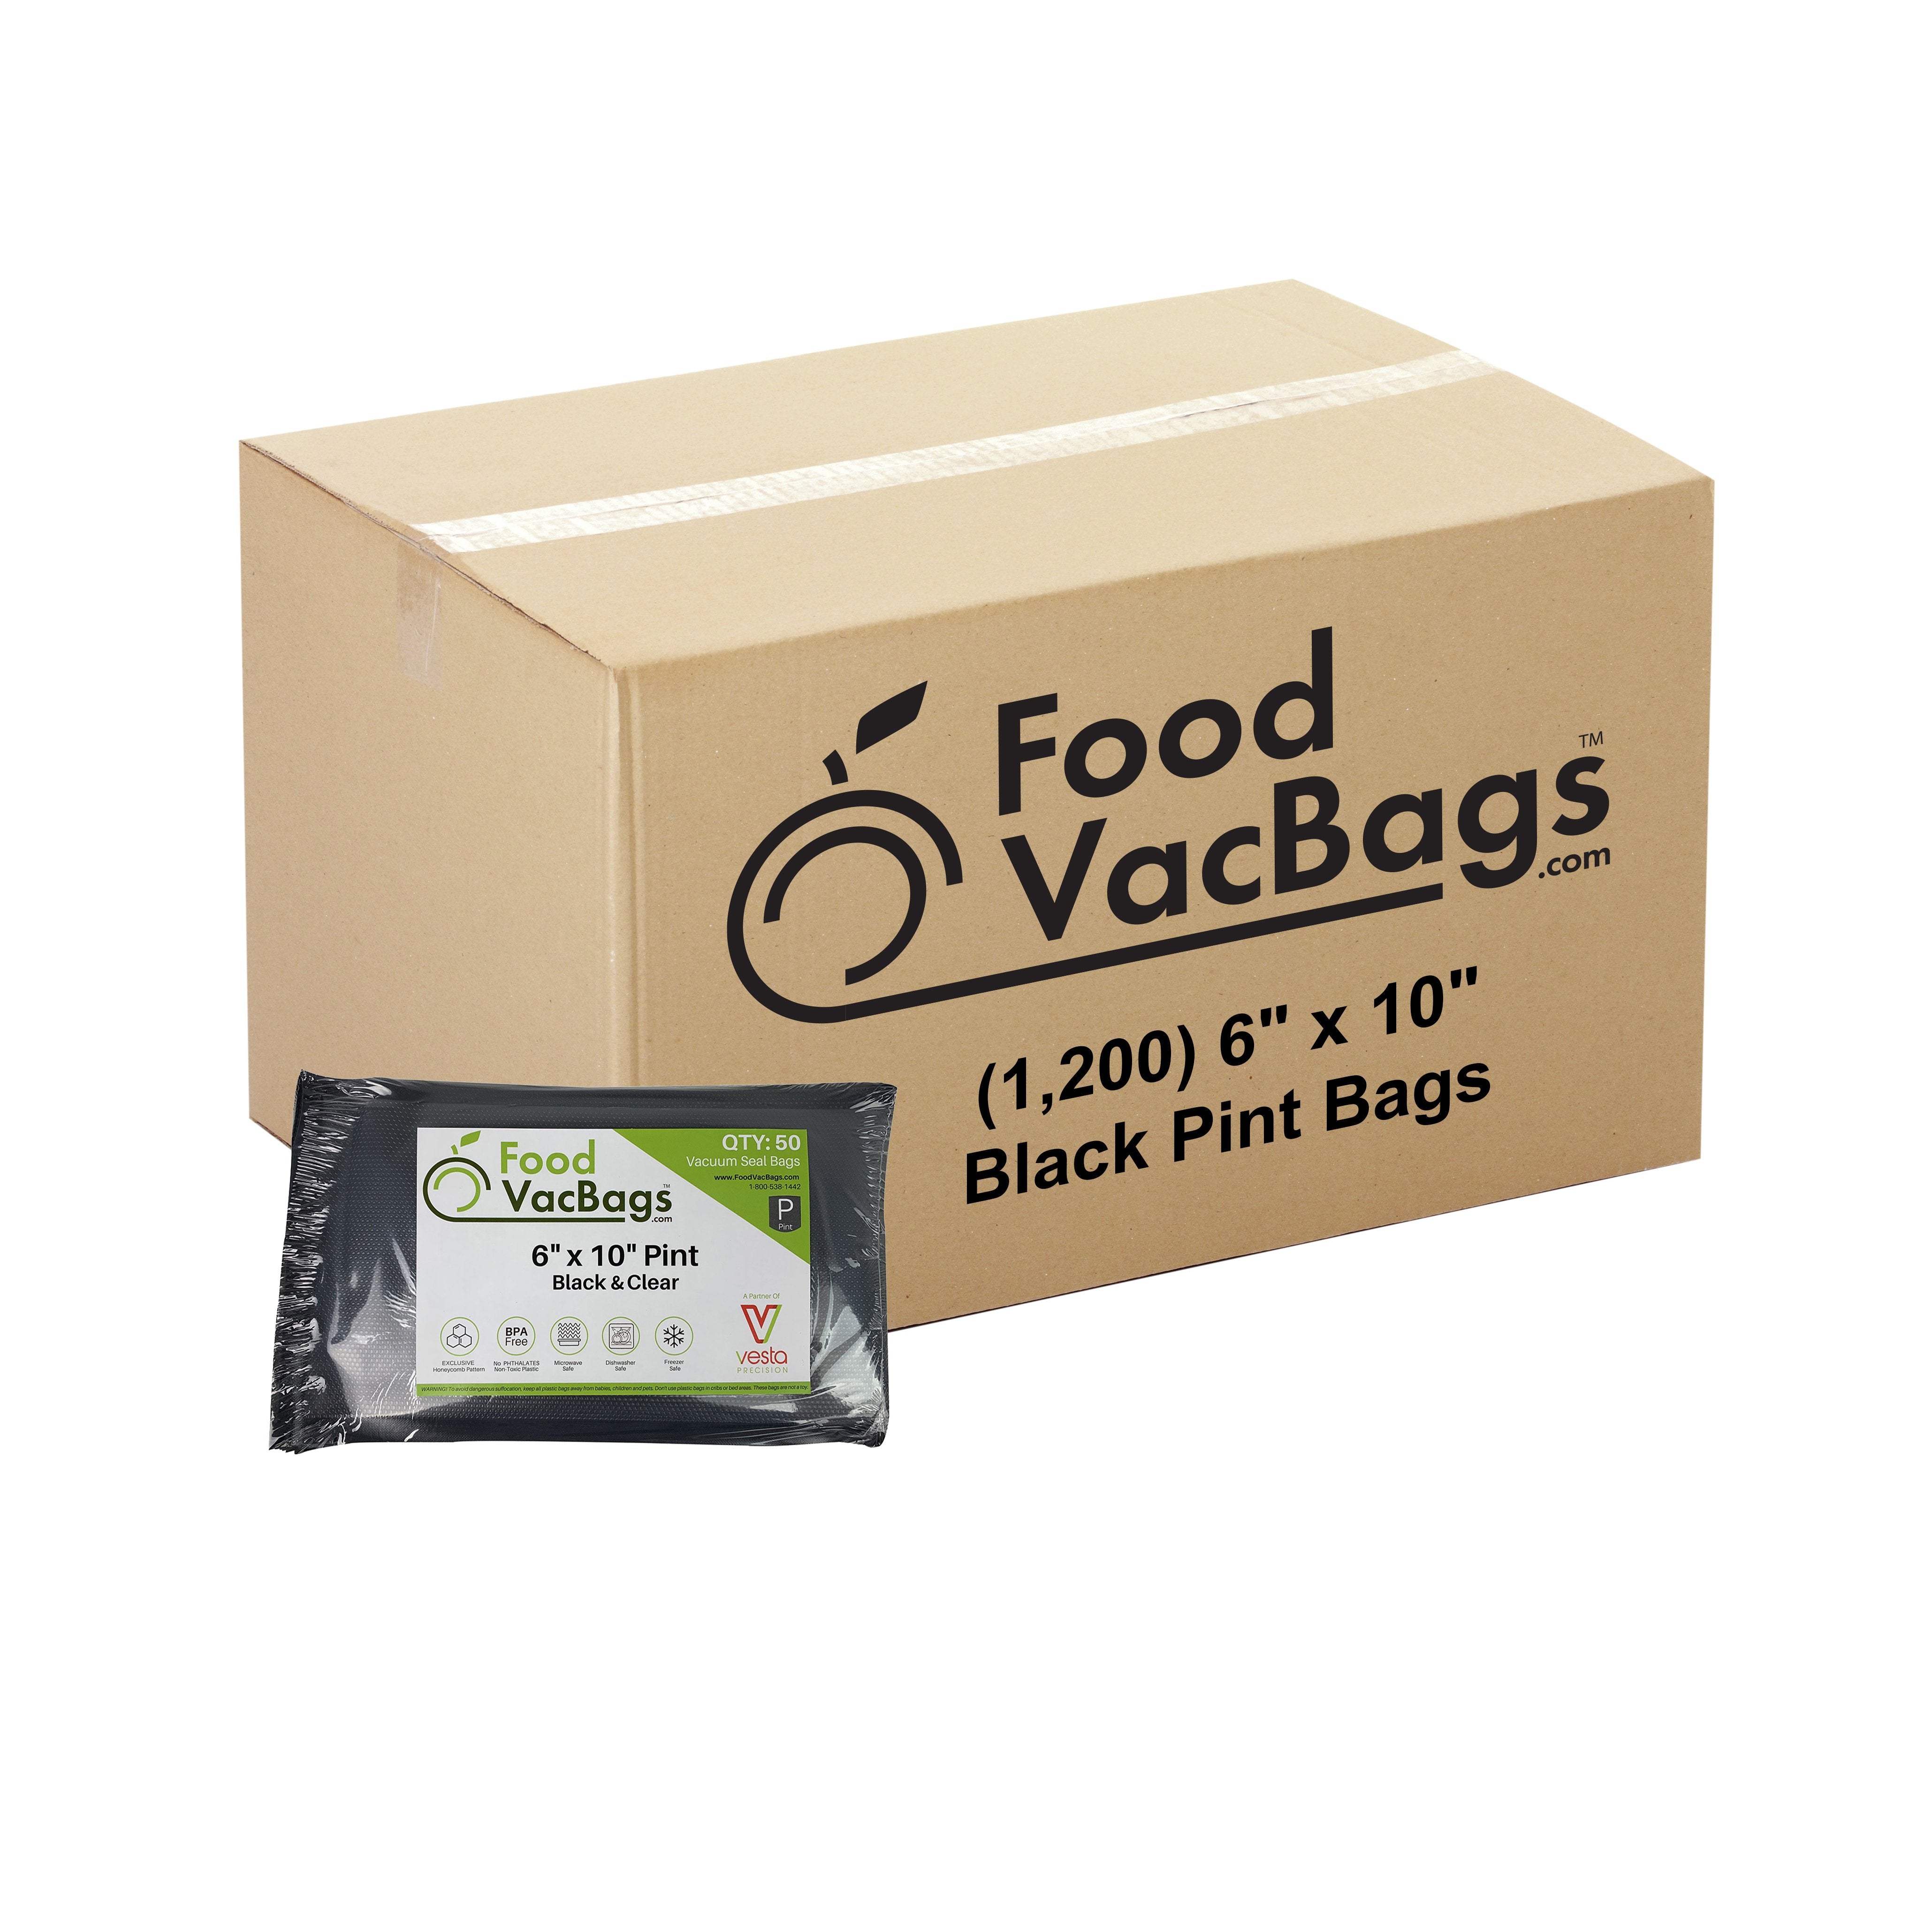 FoodSaver 1 Plastic Vacuum Sealer Bags